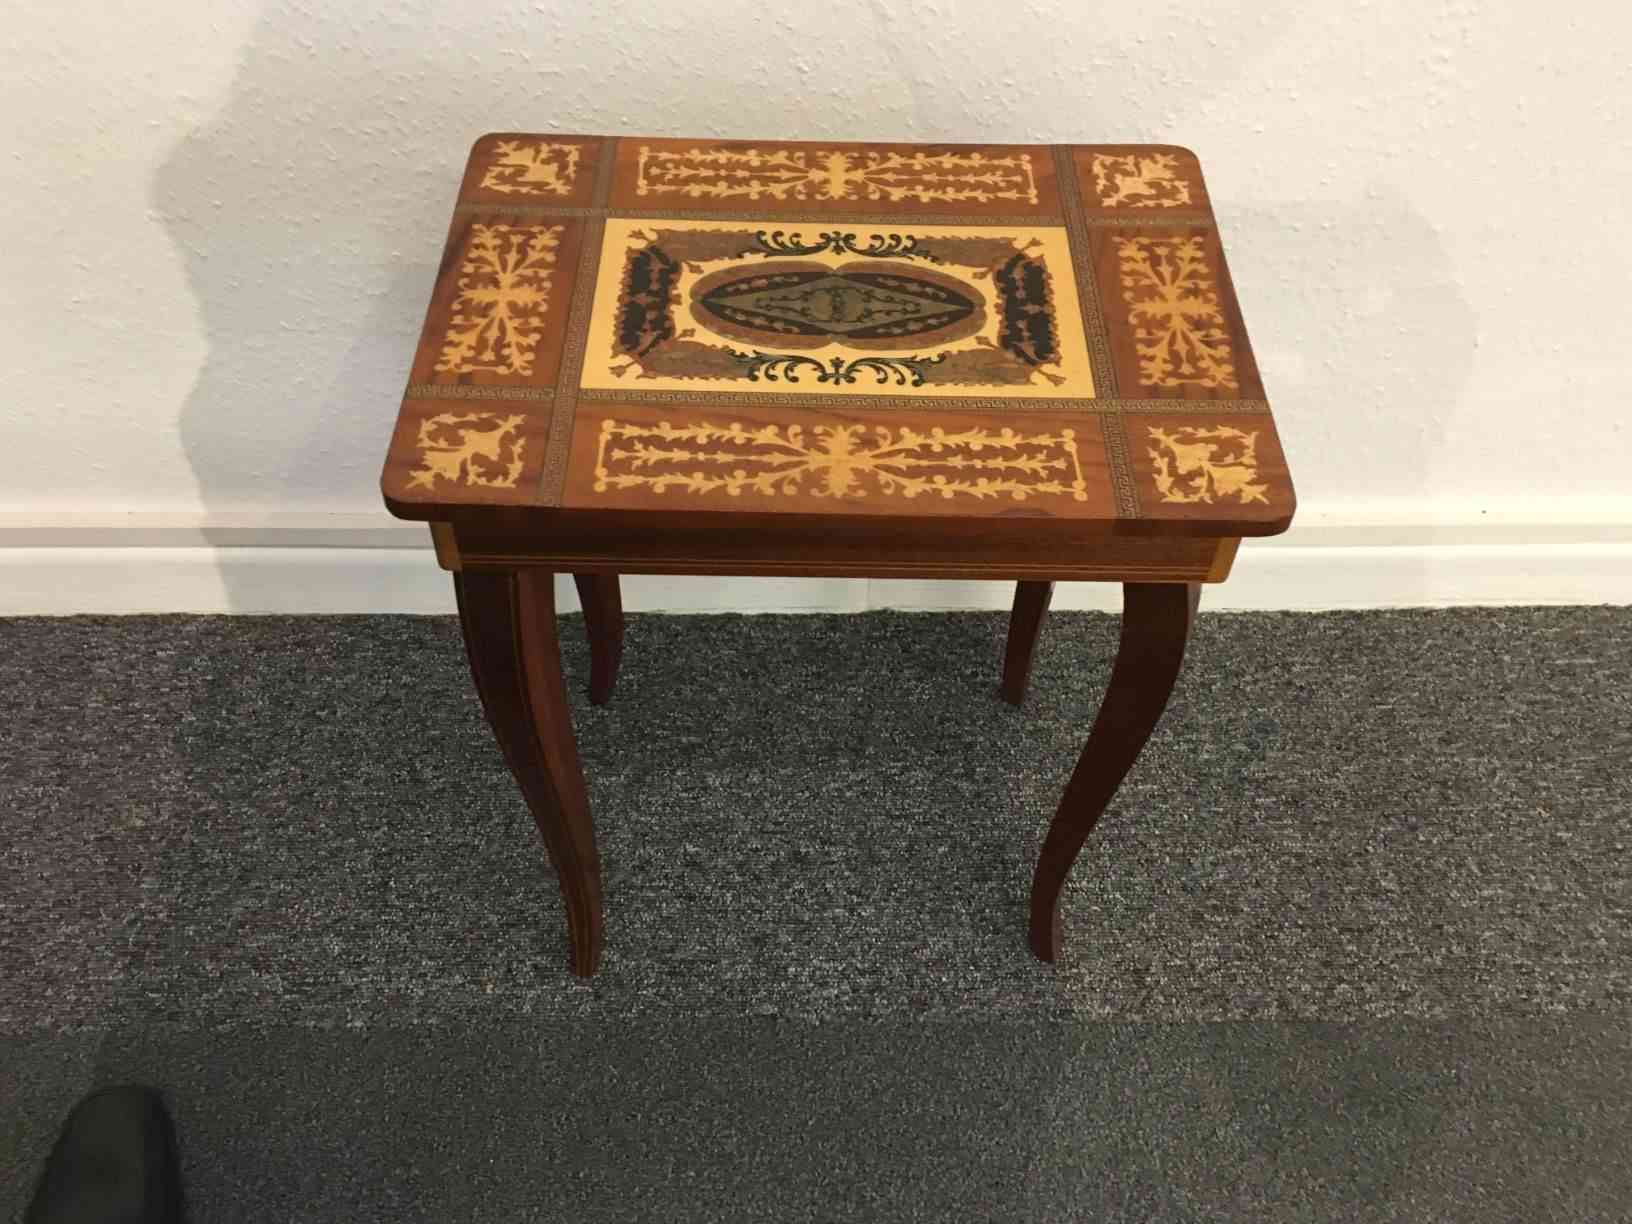 Sybord med intarsia og spilledåse Italiensk fra start 1900 tallet. En typisk souvenir for de få der rejste på den tid, mest håndværkere der var på valsen for at dygtiggøre sig. Meget flot stand. Pris 475,- Kr.